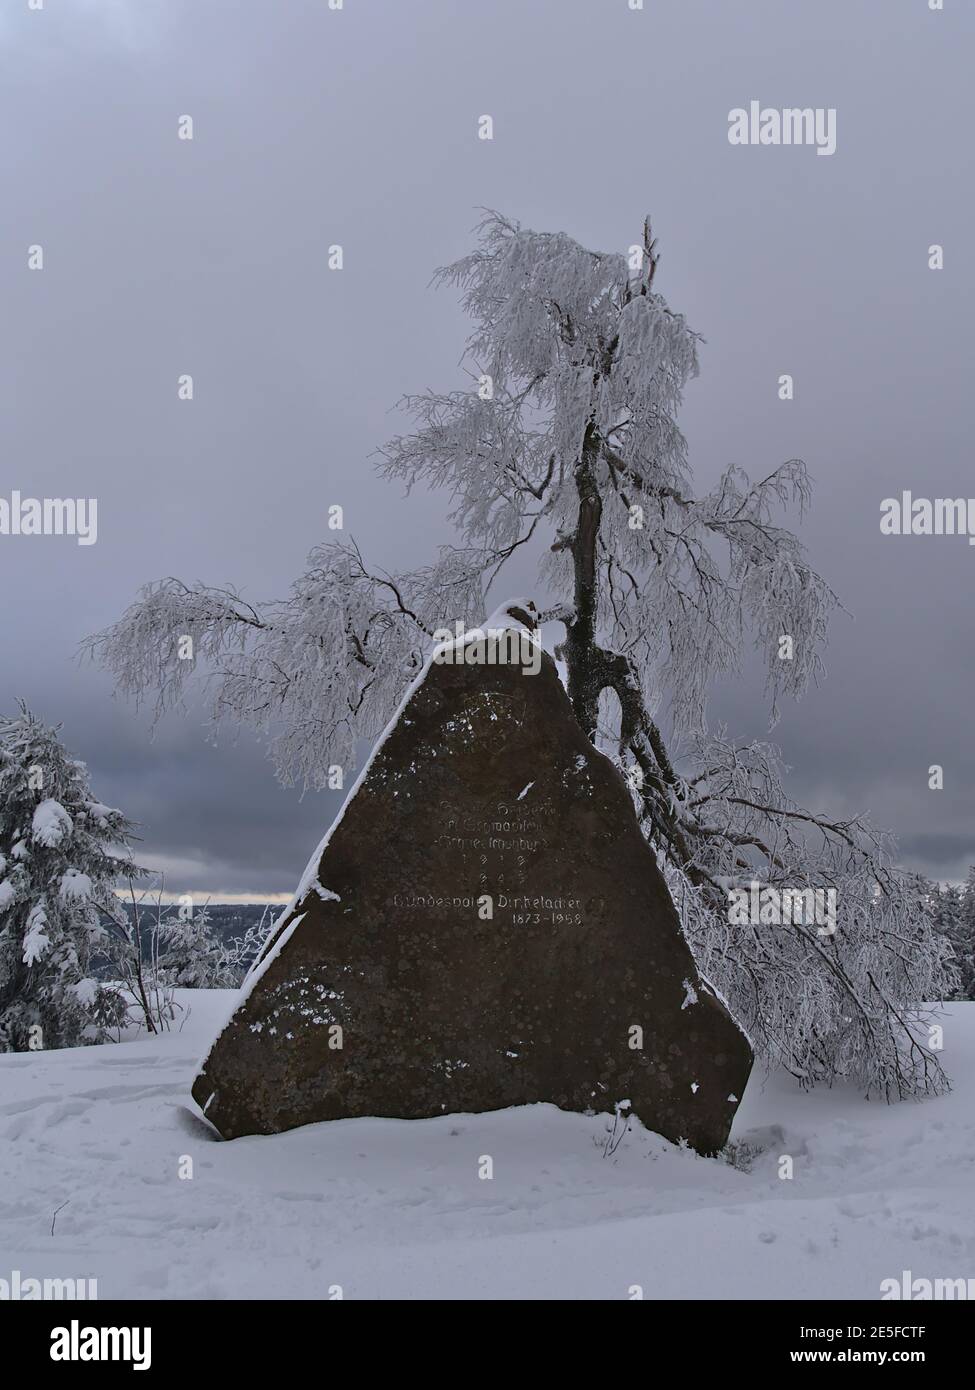 Grande lapide (masso di arenaria) in ricordo di Bundesvater Dinkelacker, fondatore della Swabian Ski Association nella stagione invernale con neve. Foto Stock